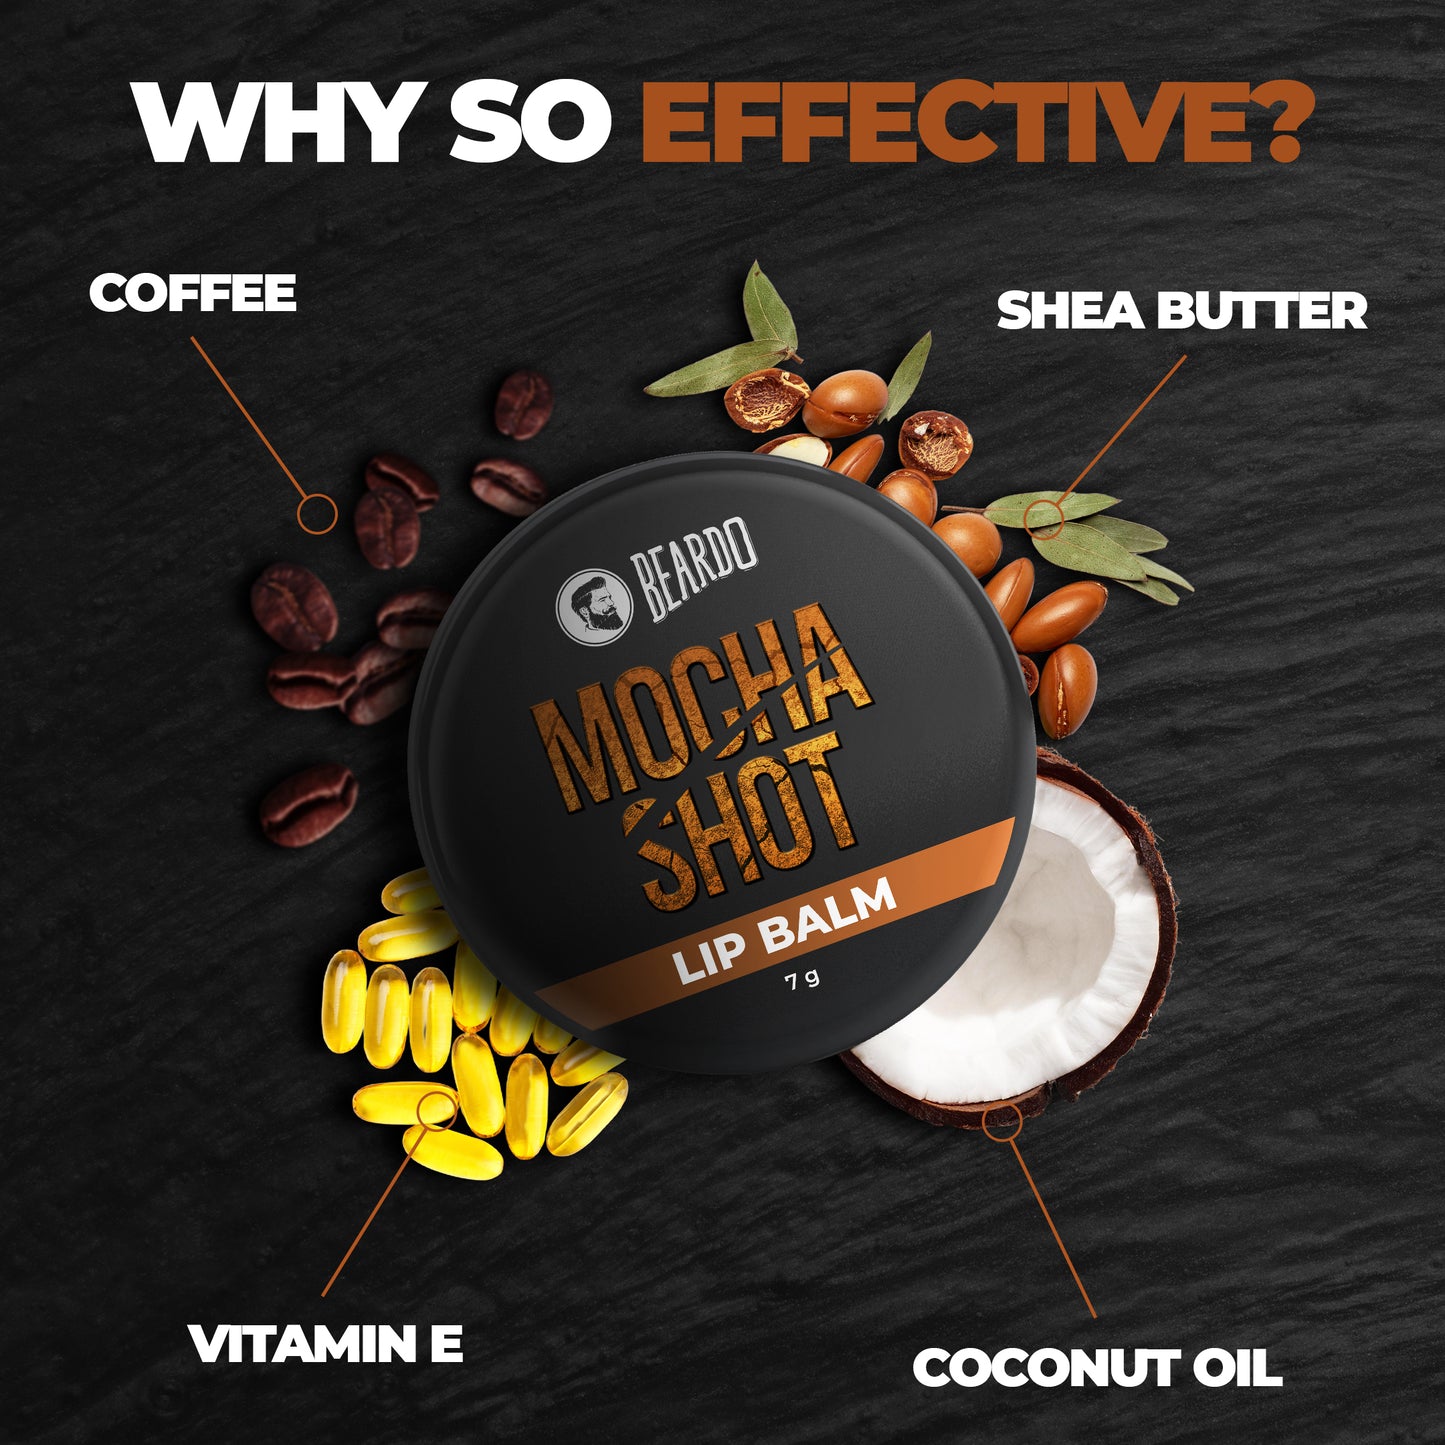 vitamin E, Shea butter, coconut oil, coffee